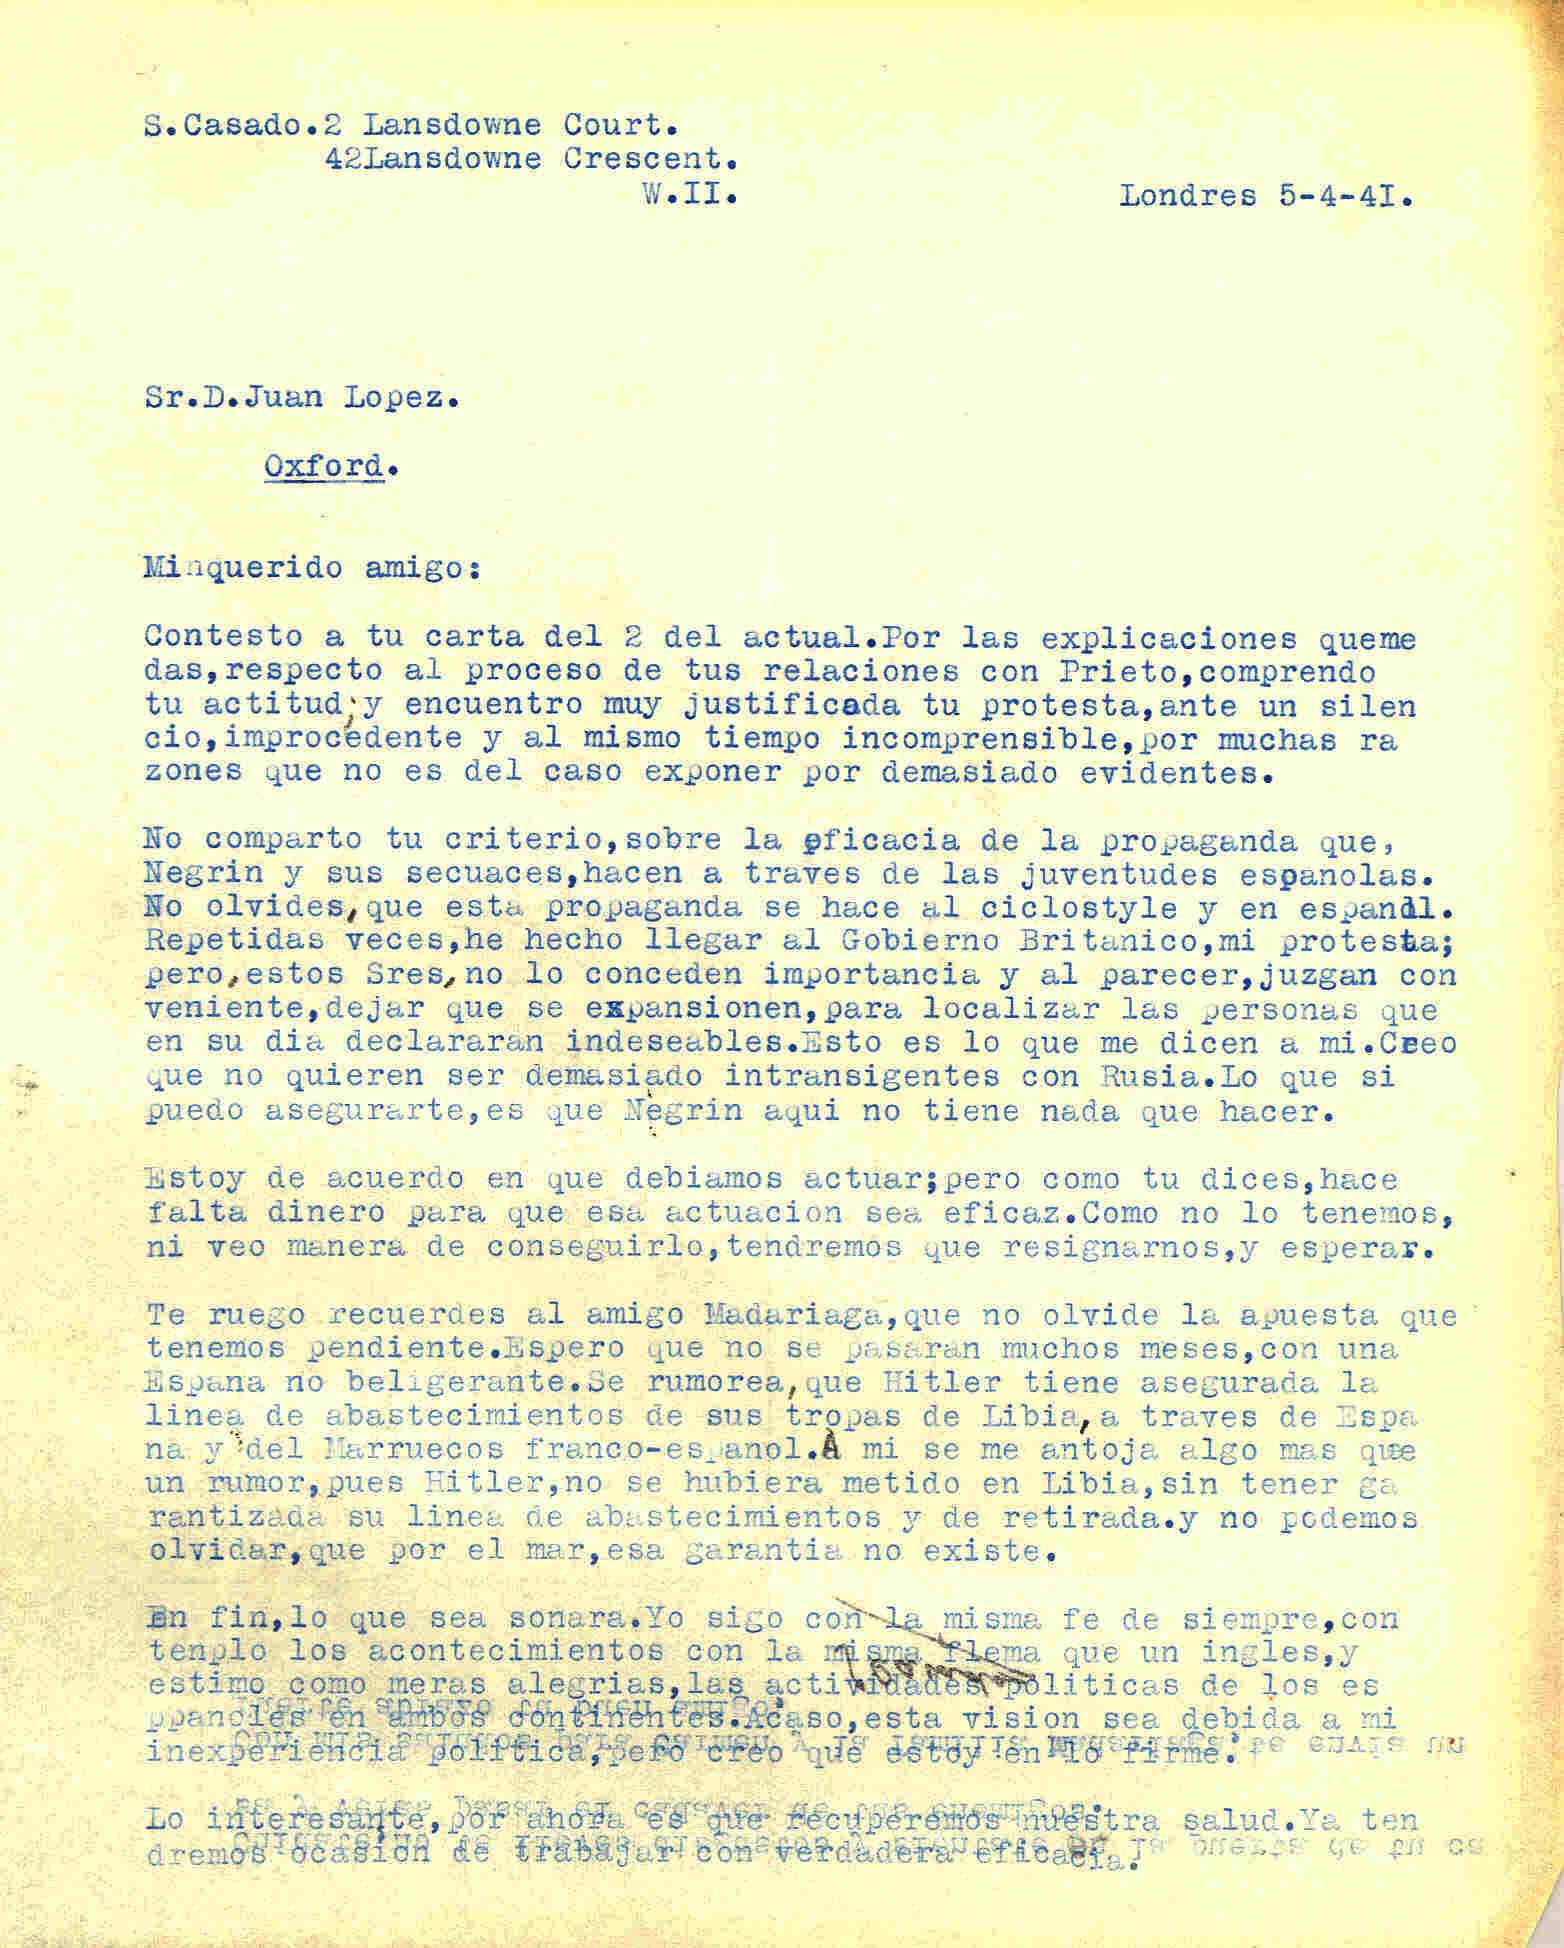 Carta de Segismundo Casado hablando de la propaganda que hace Negrín y del rumor que Hitler tiene asegurada la linea de abastecimientos de sus tropas en Libia.